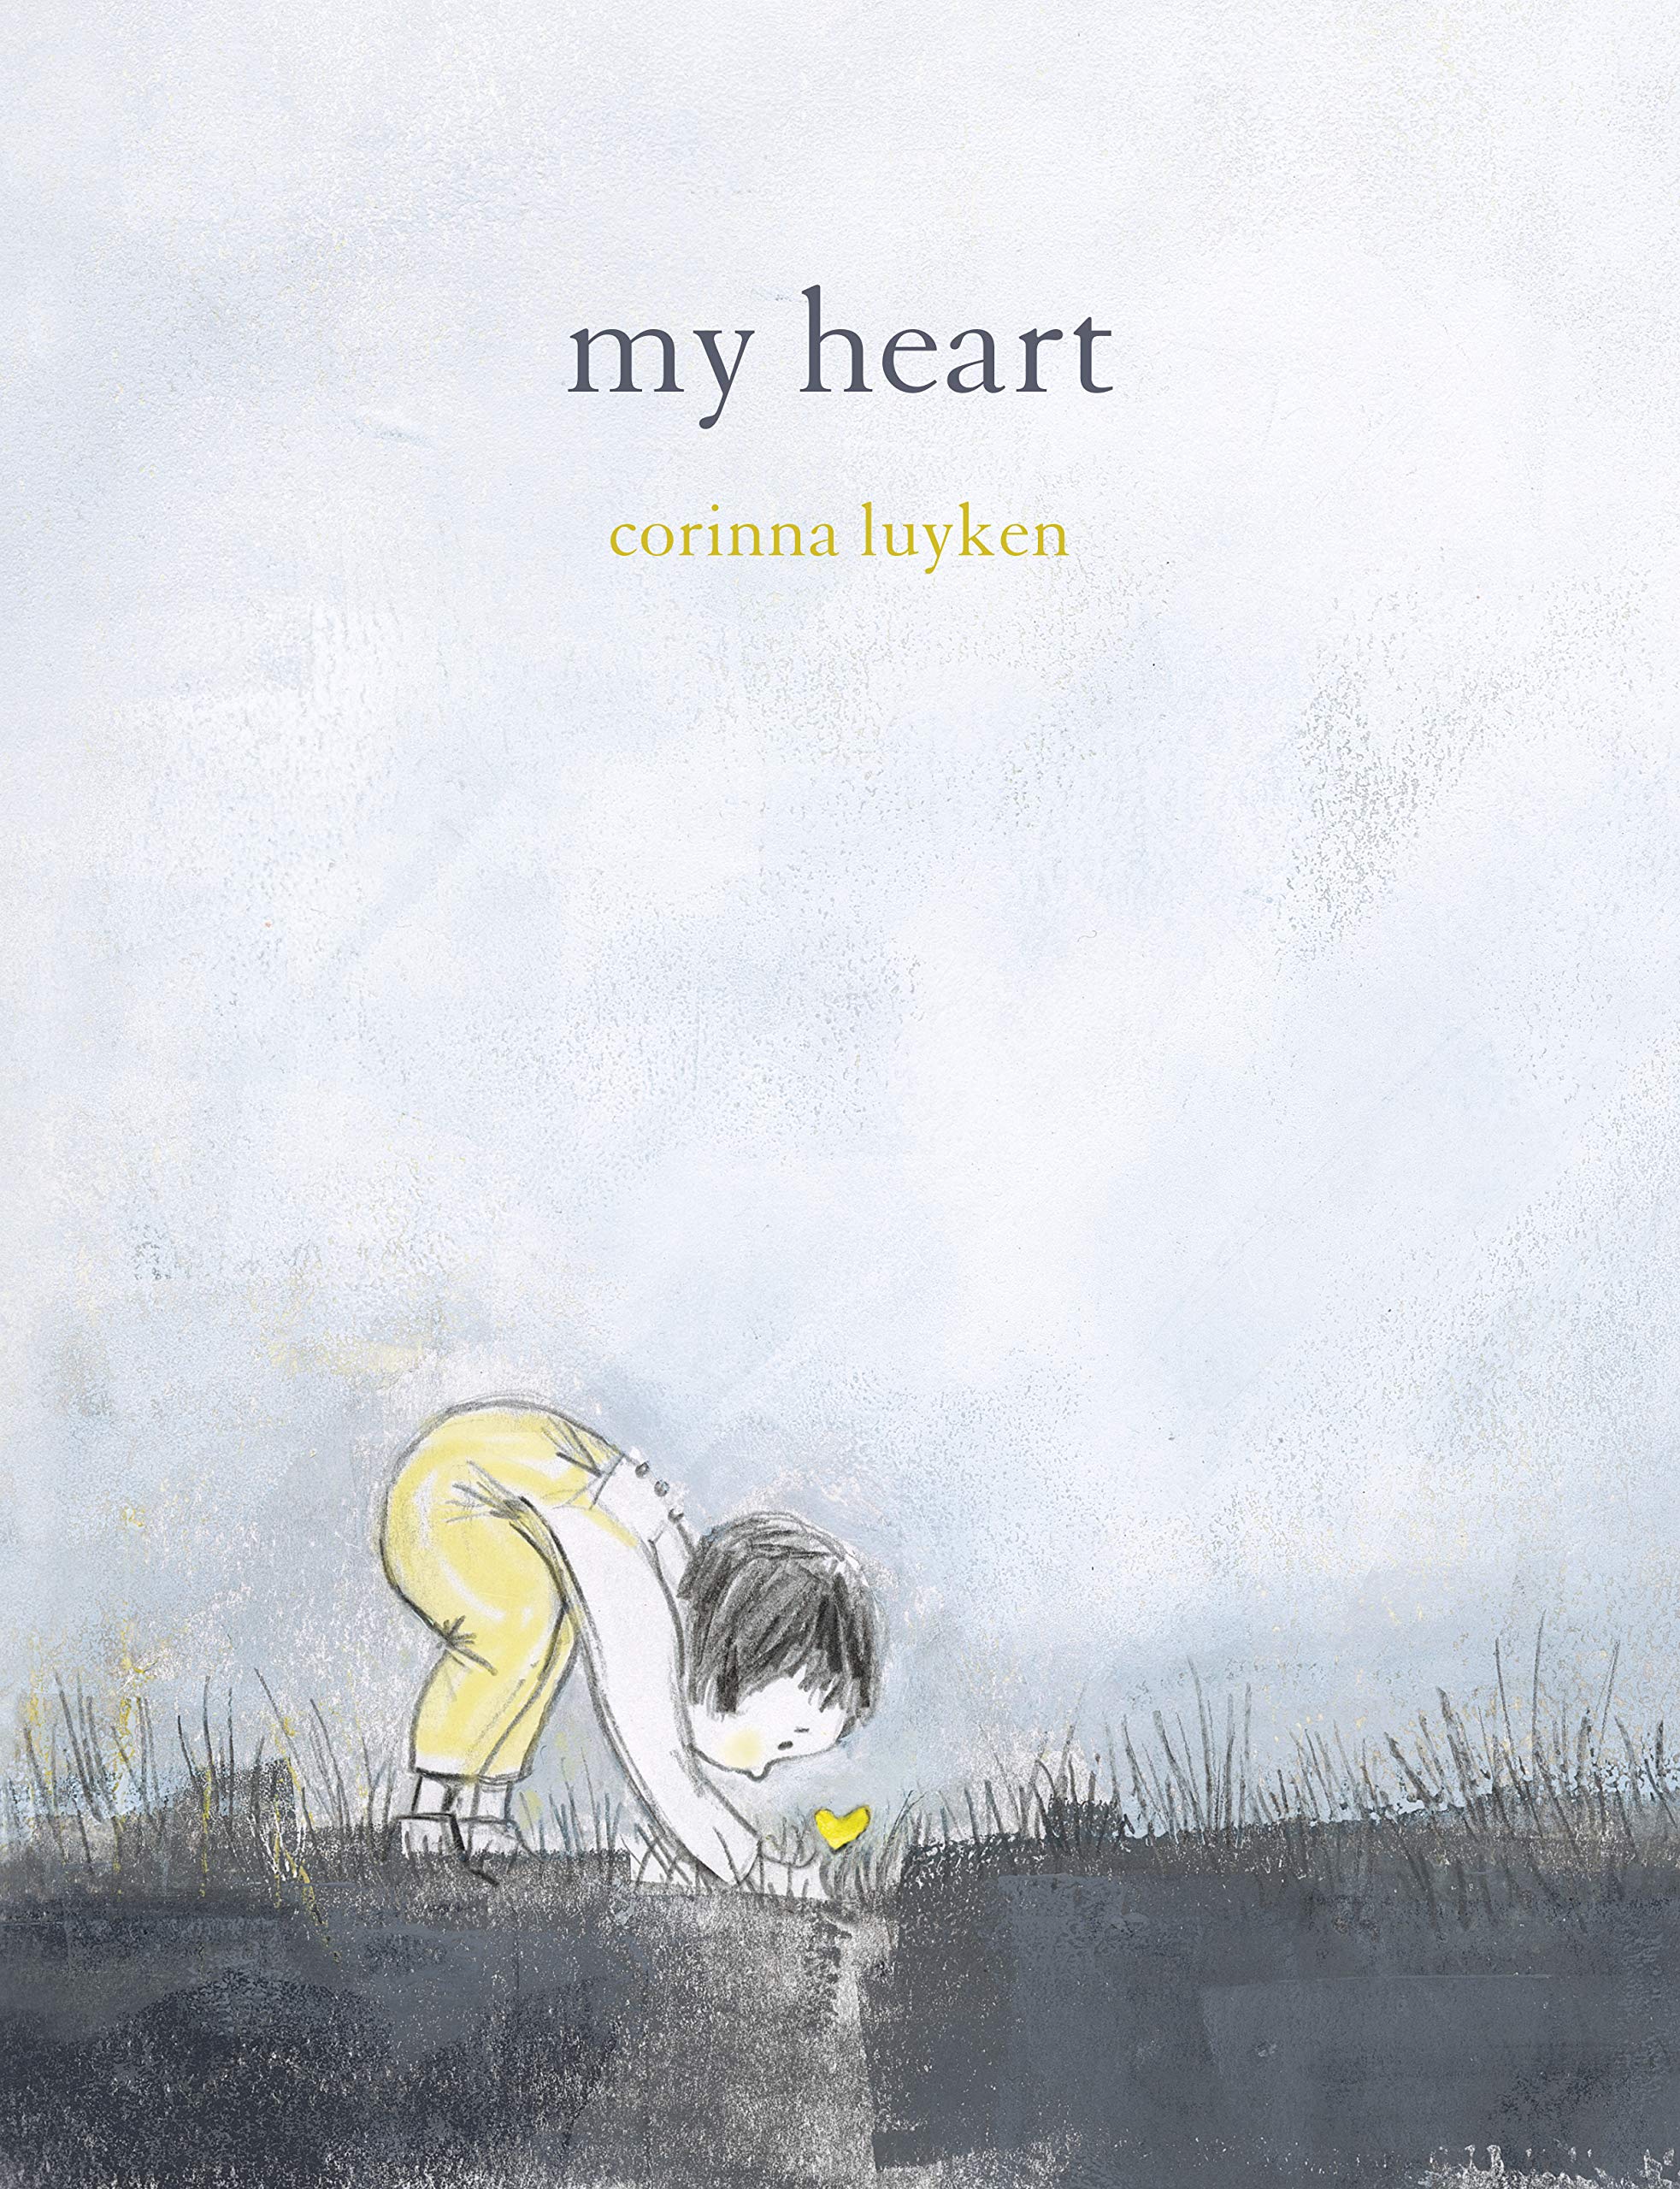 My Heart by Corinna Luyken